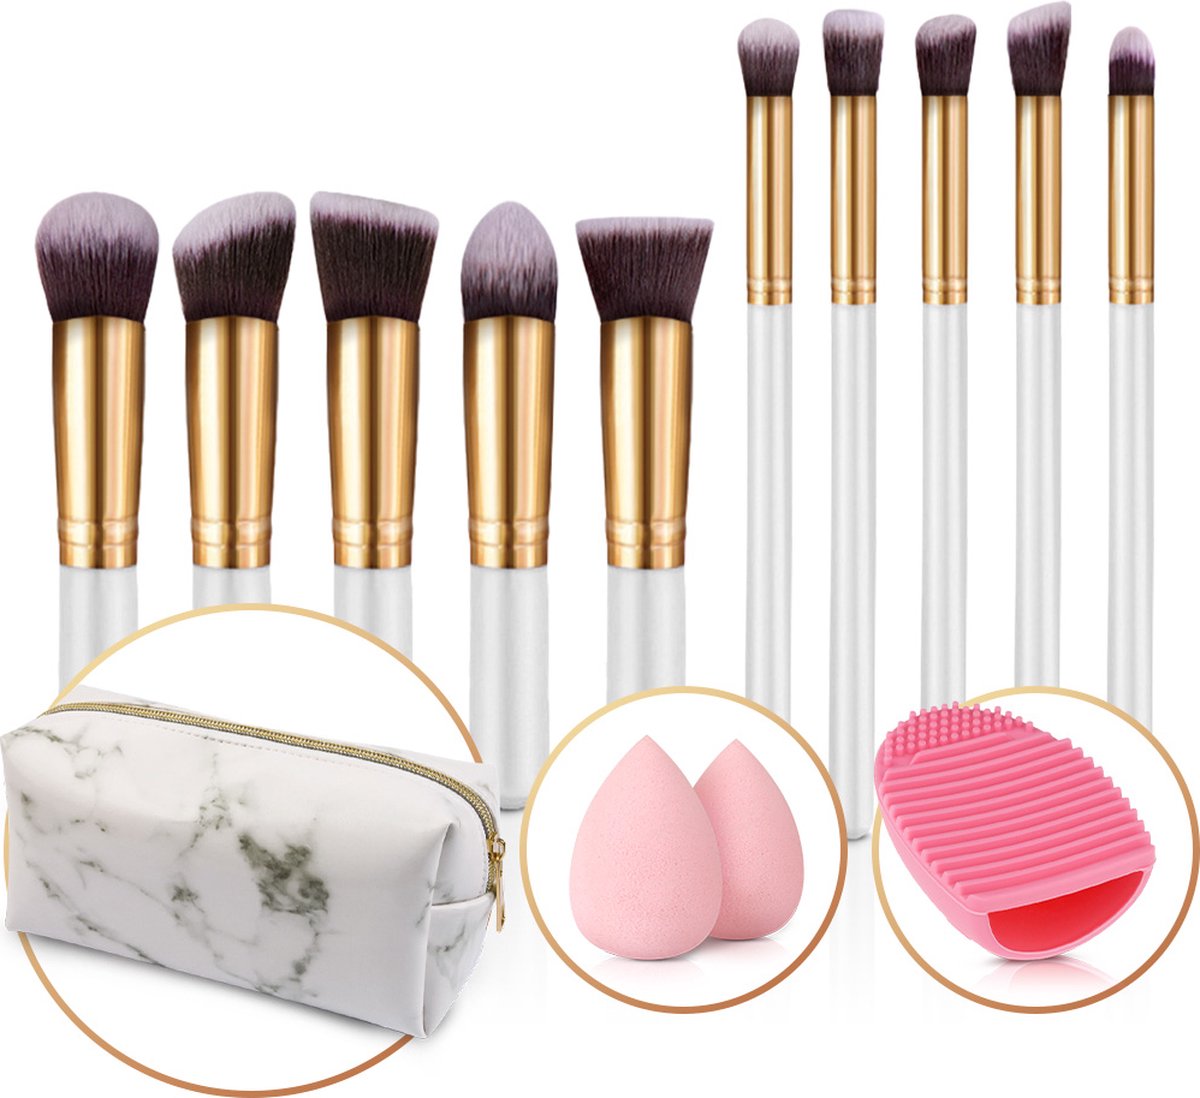 Evvie set van 10 make-up kwasten met beauty blender (2x) en brushegg in etui - wit/goud